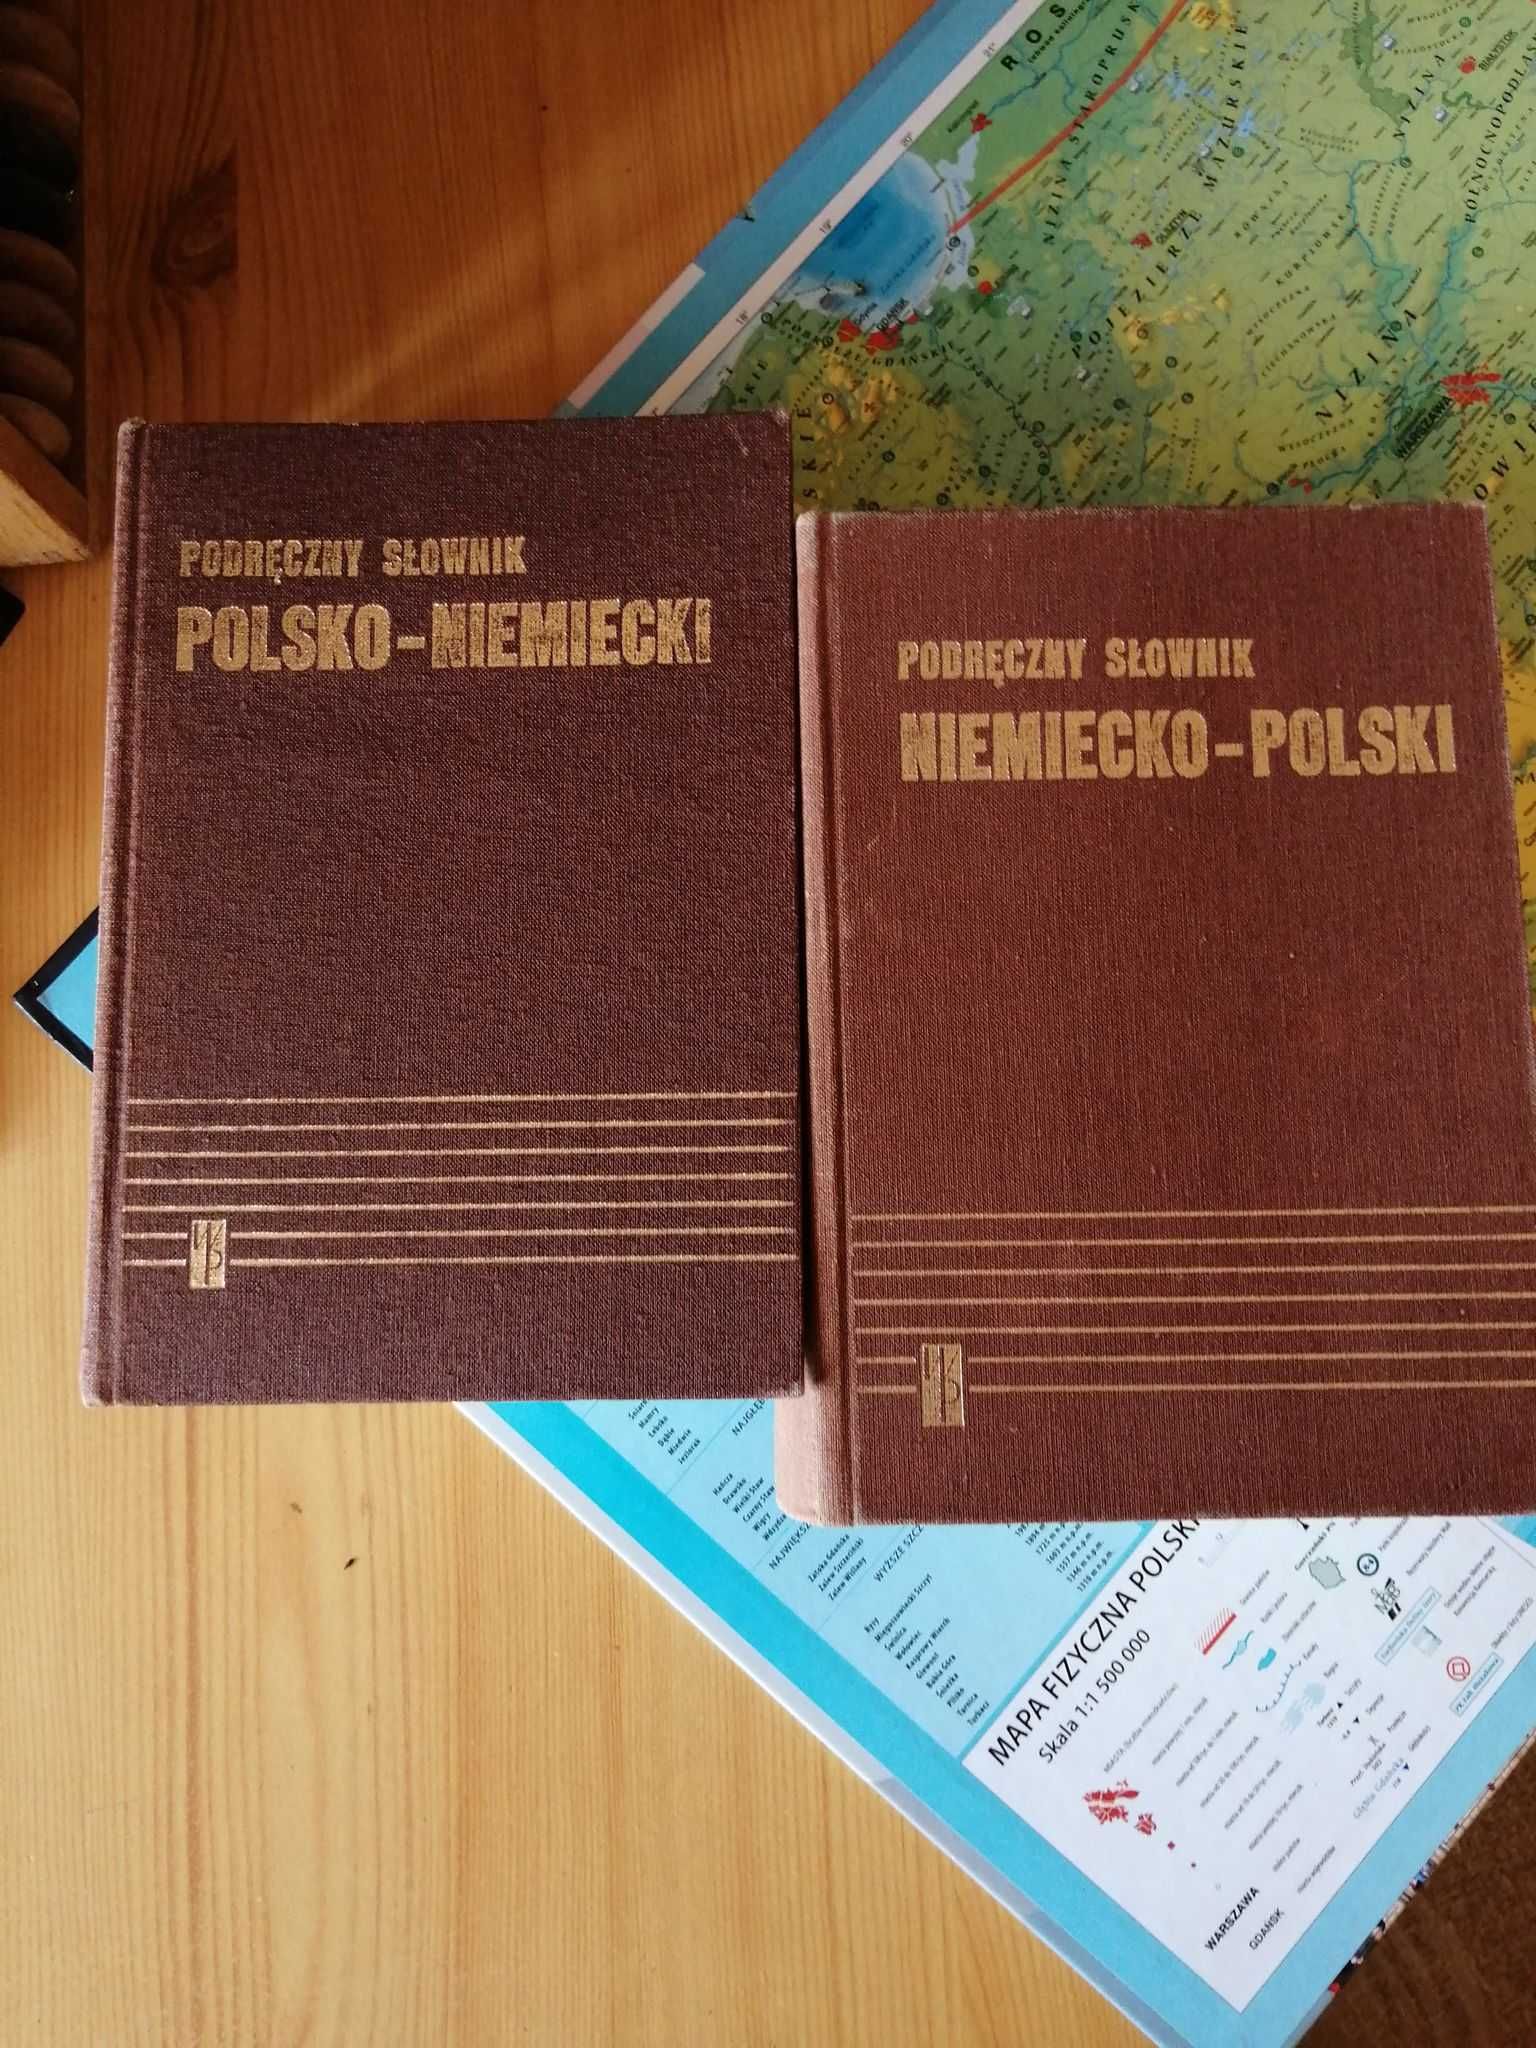 Podręczny słownik polsko- niemiecki i niemiecko-polski